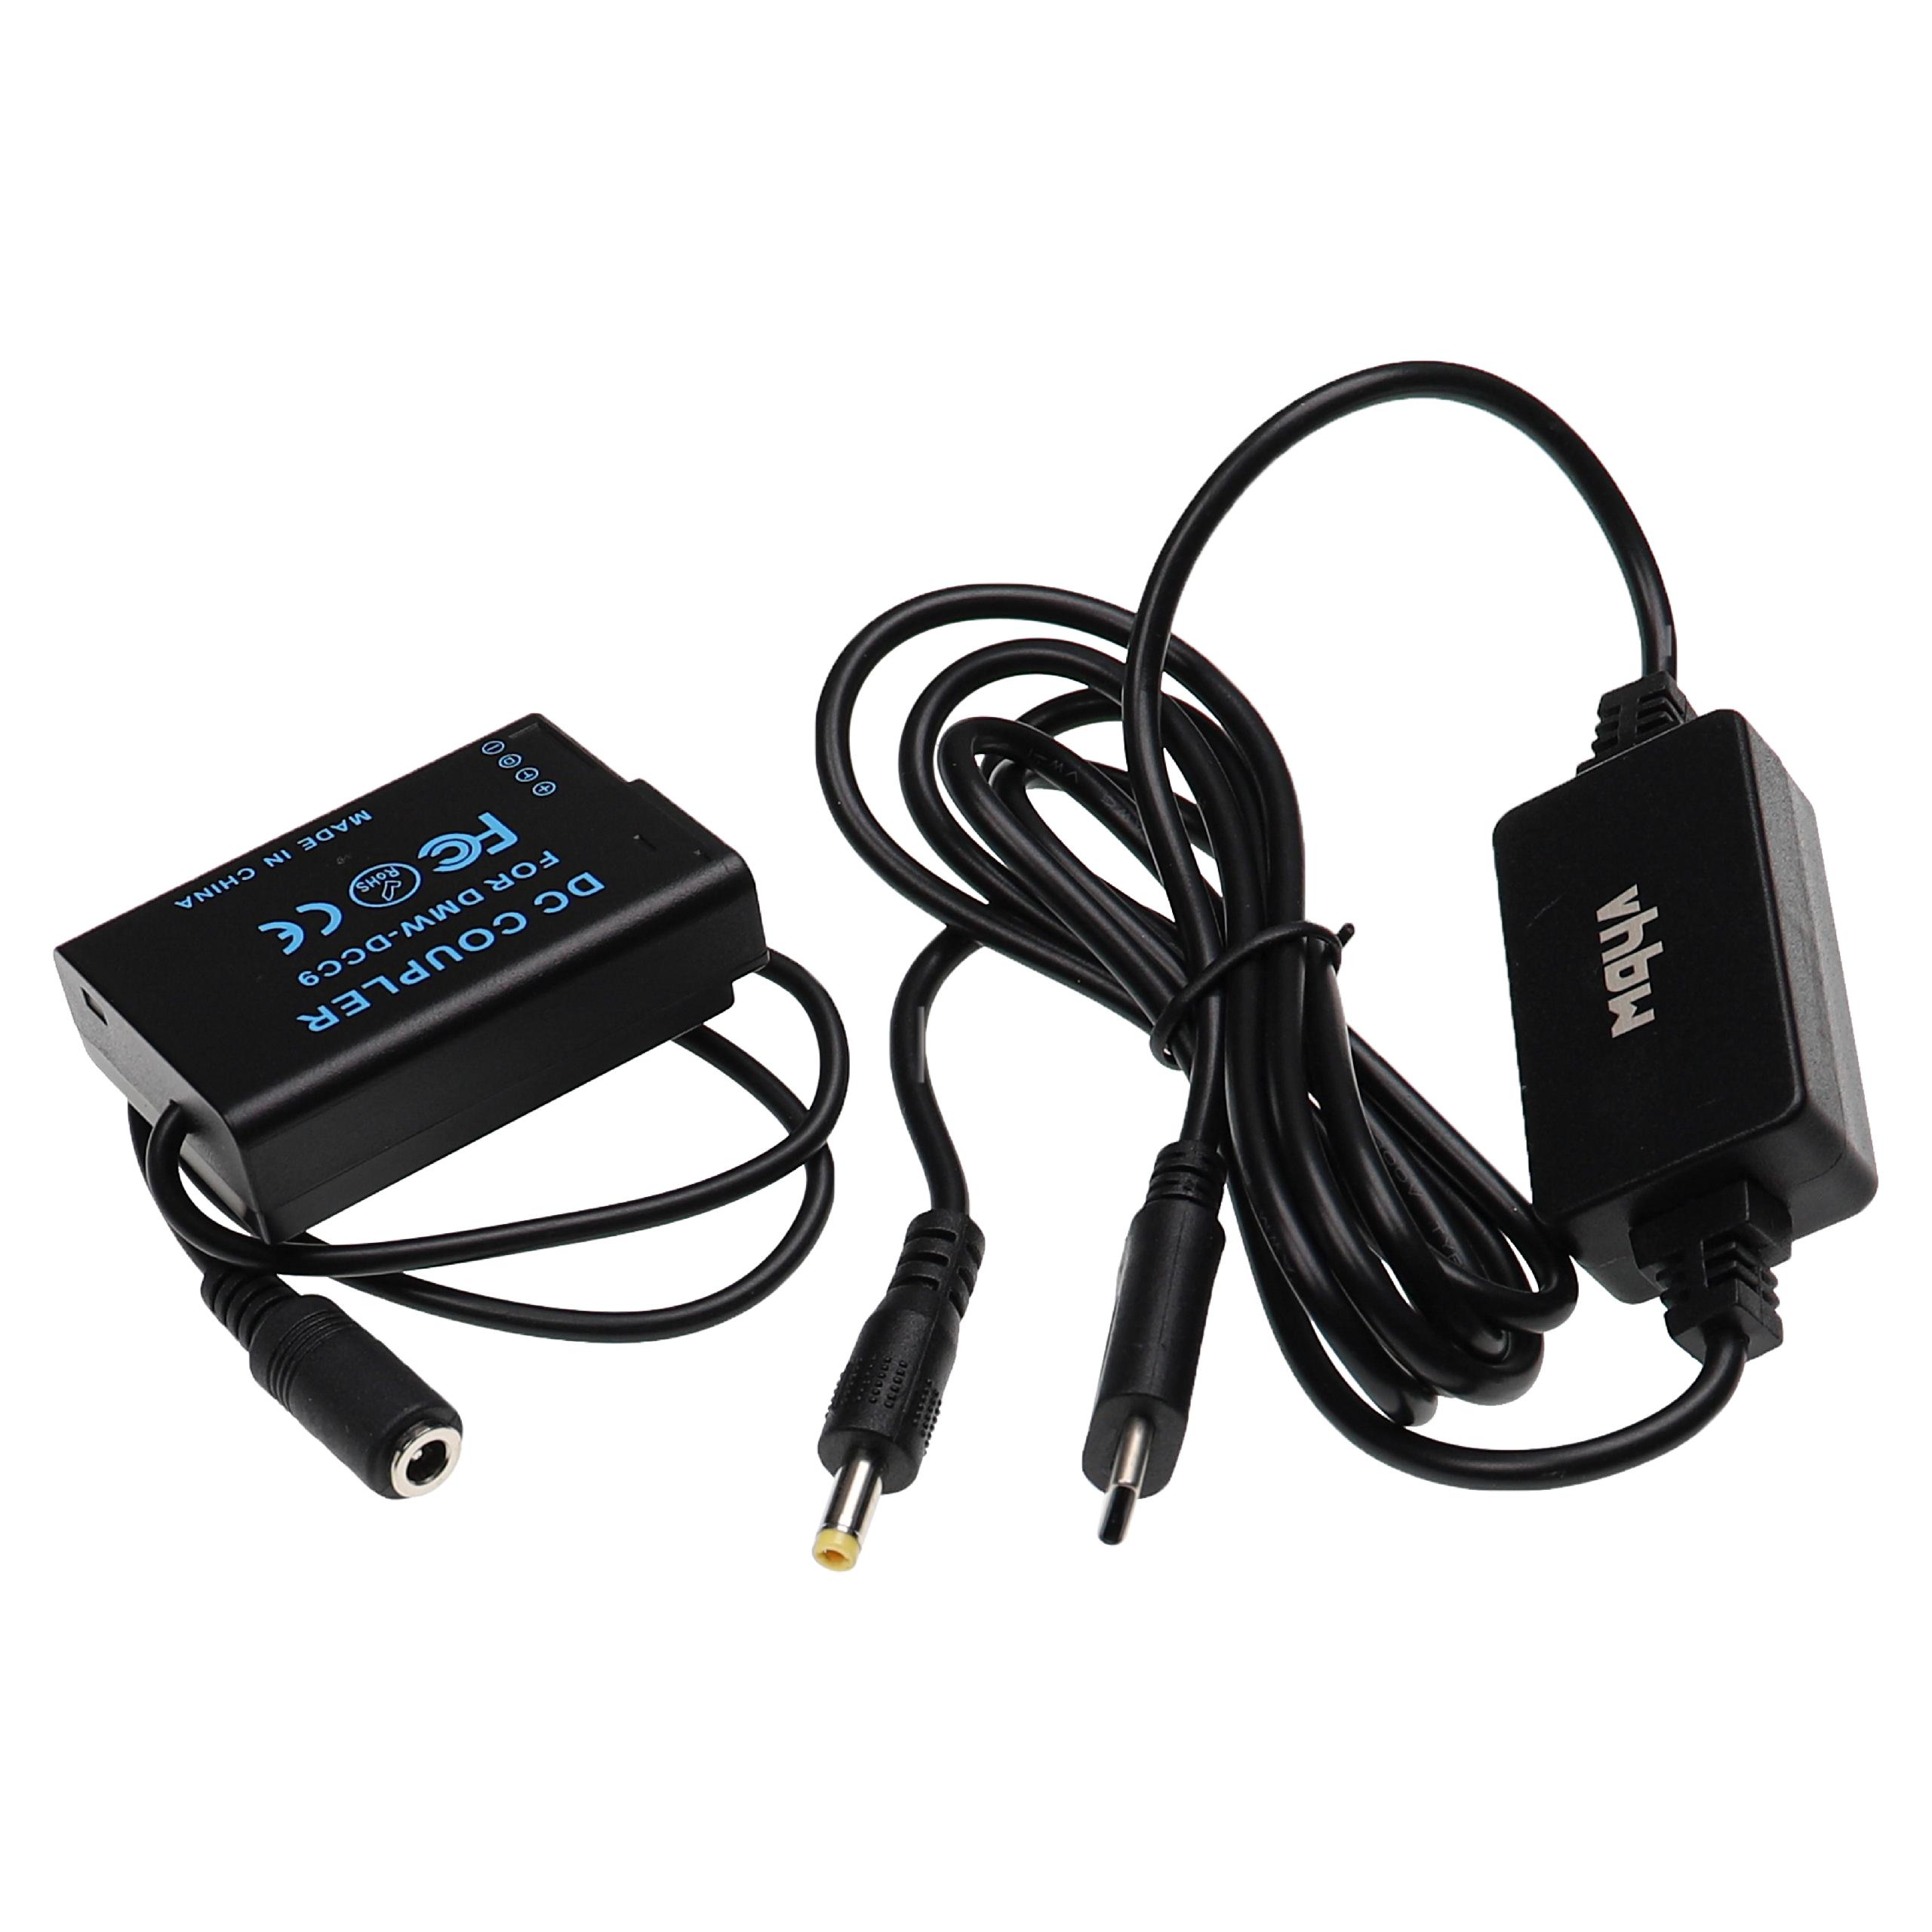 Zasilacz USB do aparatu zam. DMW-AC8EGDMW-AC8 + adapter zam. Panasonic DMW-DCC9 - 2 m, 9 V 3,0 A